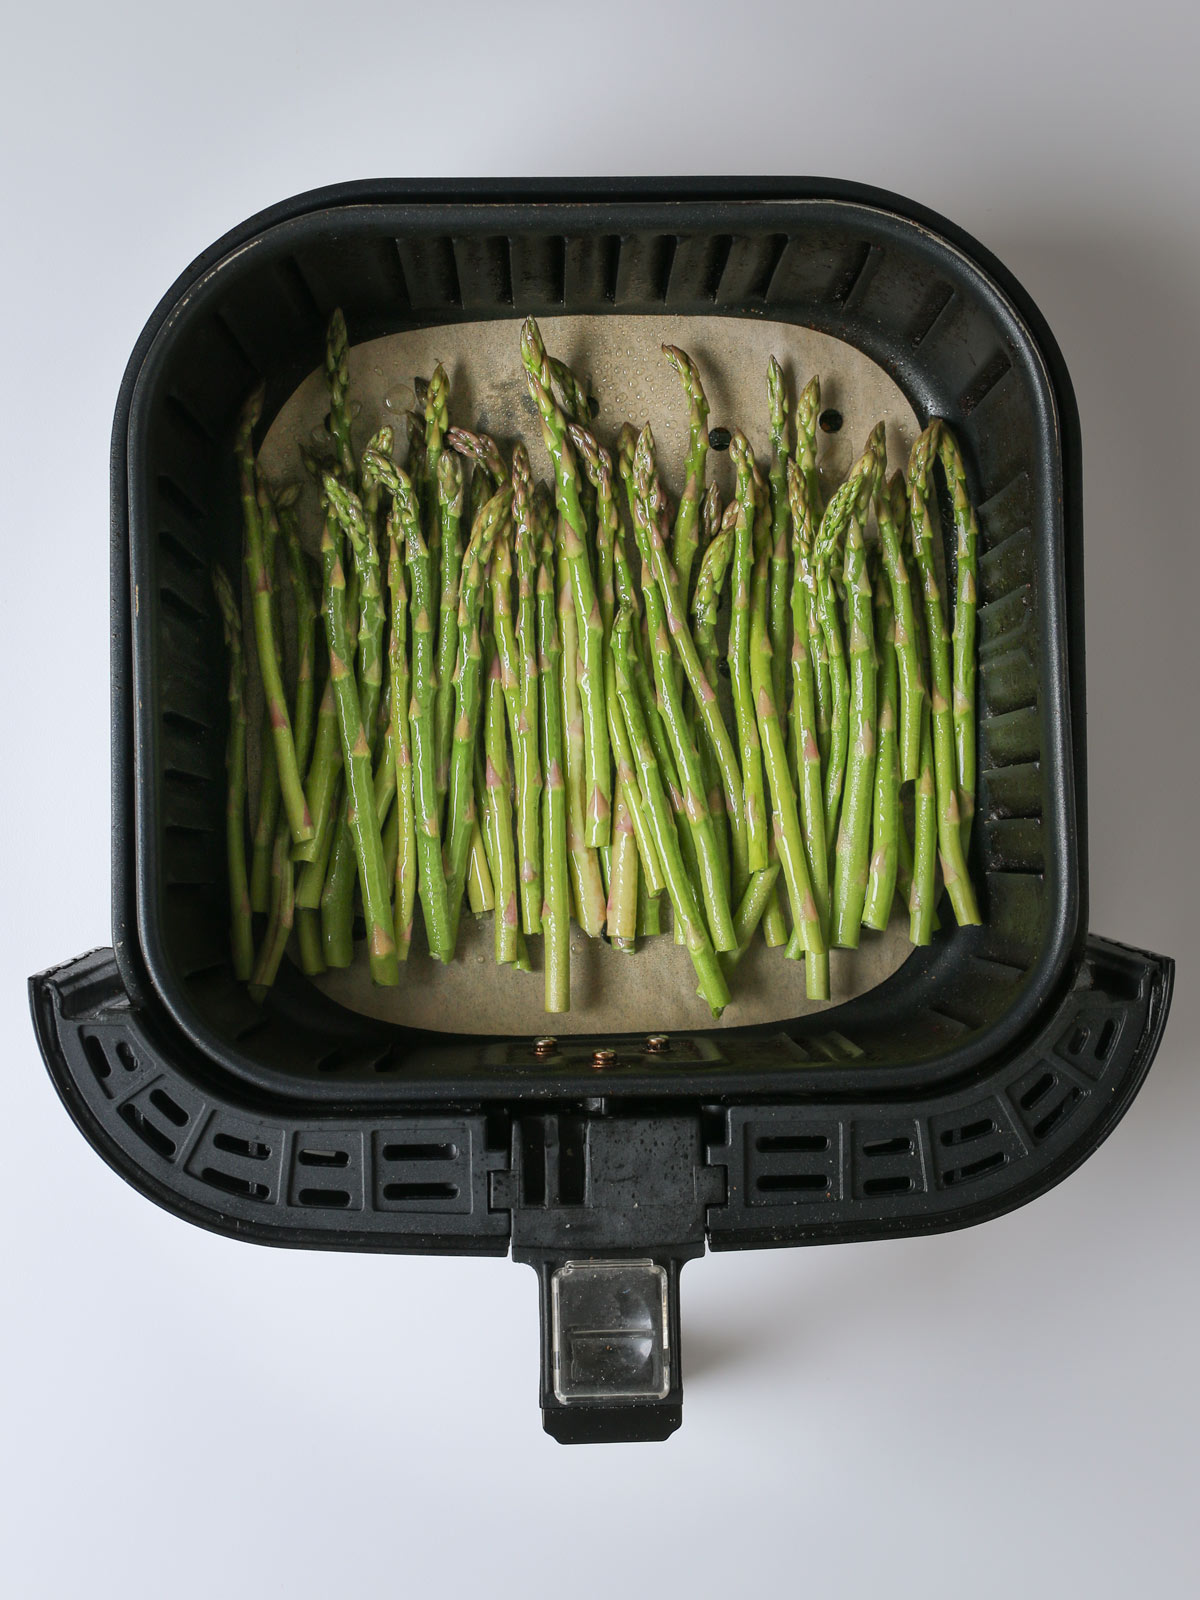 asparagus spears in air fryer basket.